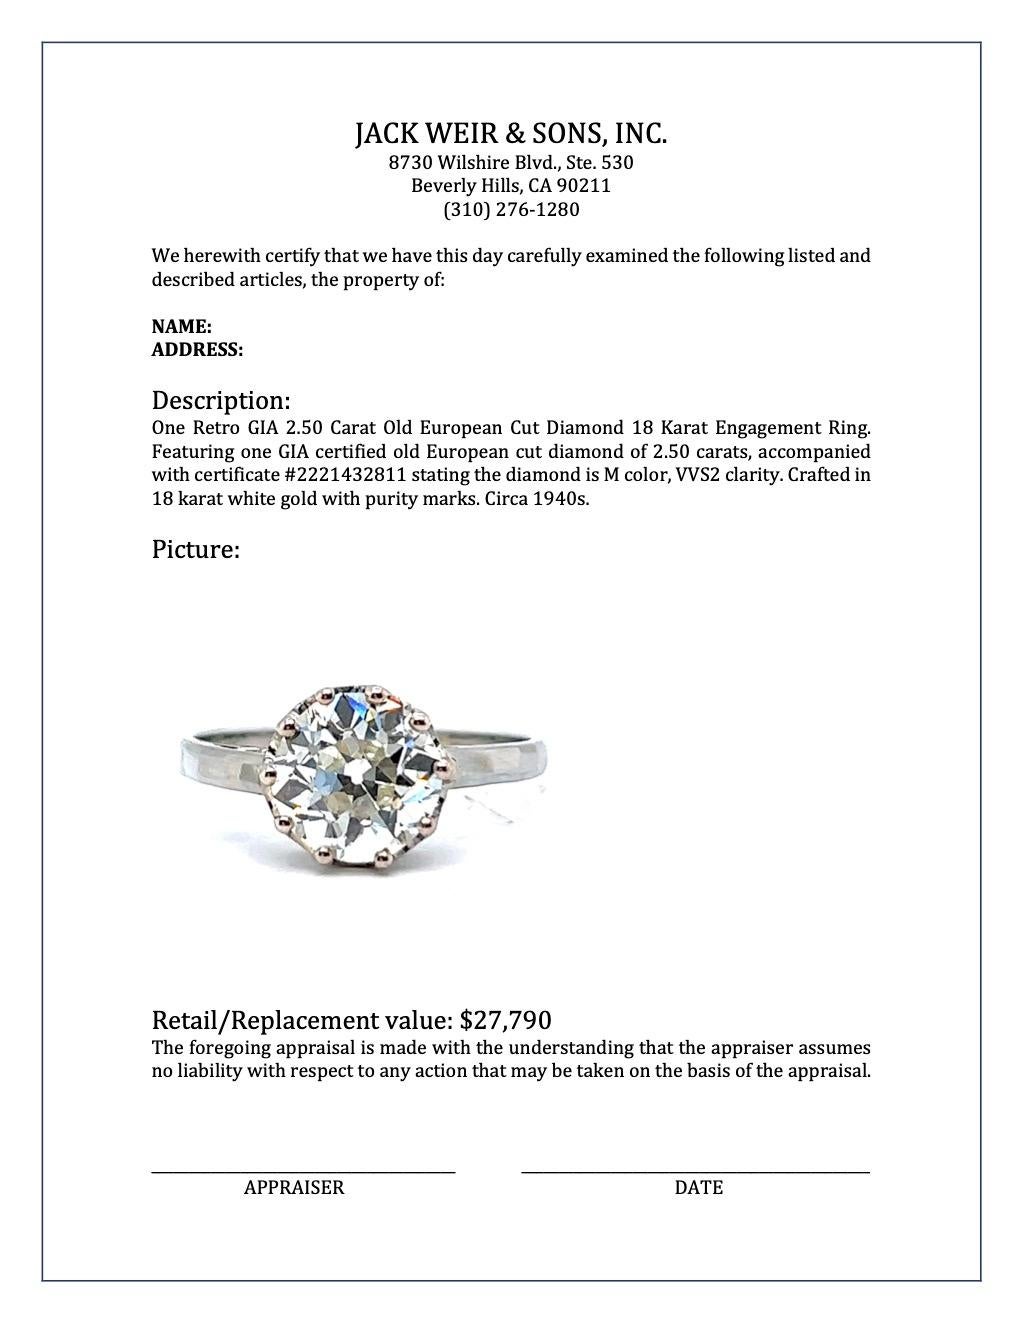 Retro GIA 2.50 Carat Old European Cut Diamond 18 Karat Gold Engagement Ring 5